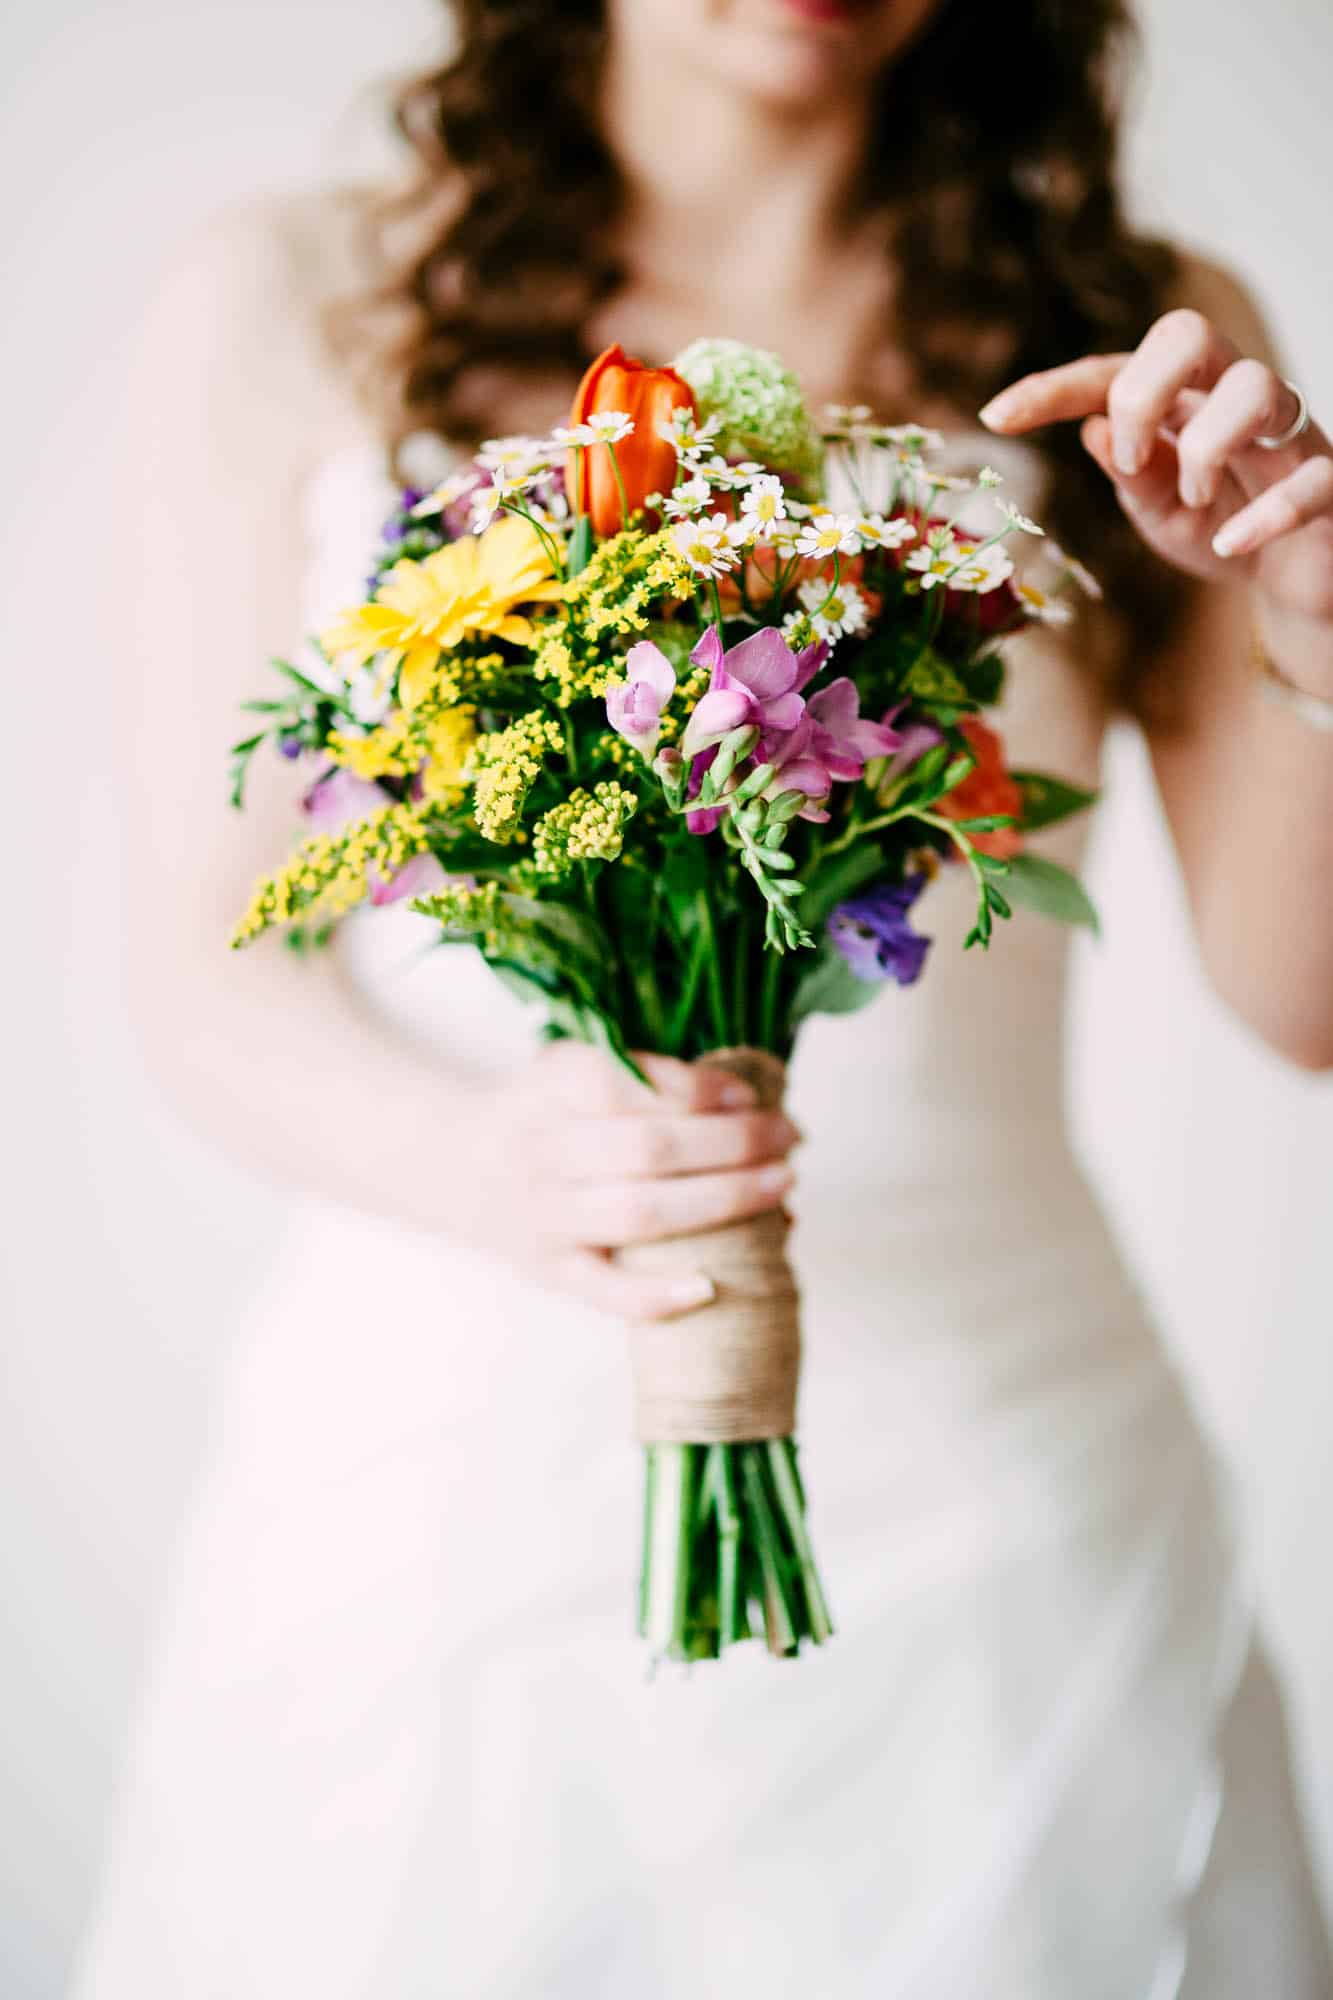     Description: A Wedding Bouquet bride holding a bouquet of colourful flowers.